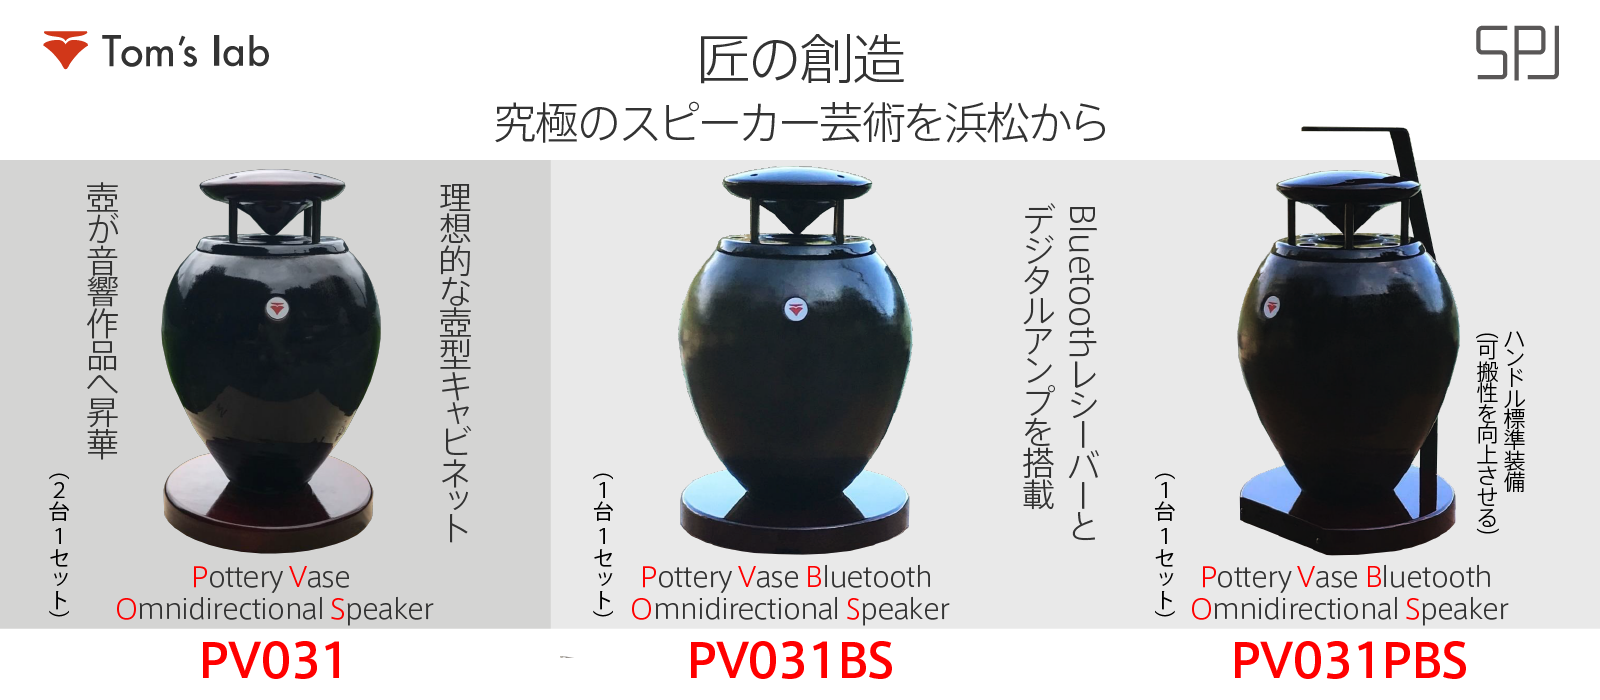 陶器製壺型 無指向性スピーカー,Pottery Vase Omnidirectional Speaker「PV031」のご案内